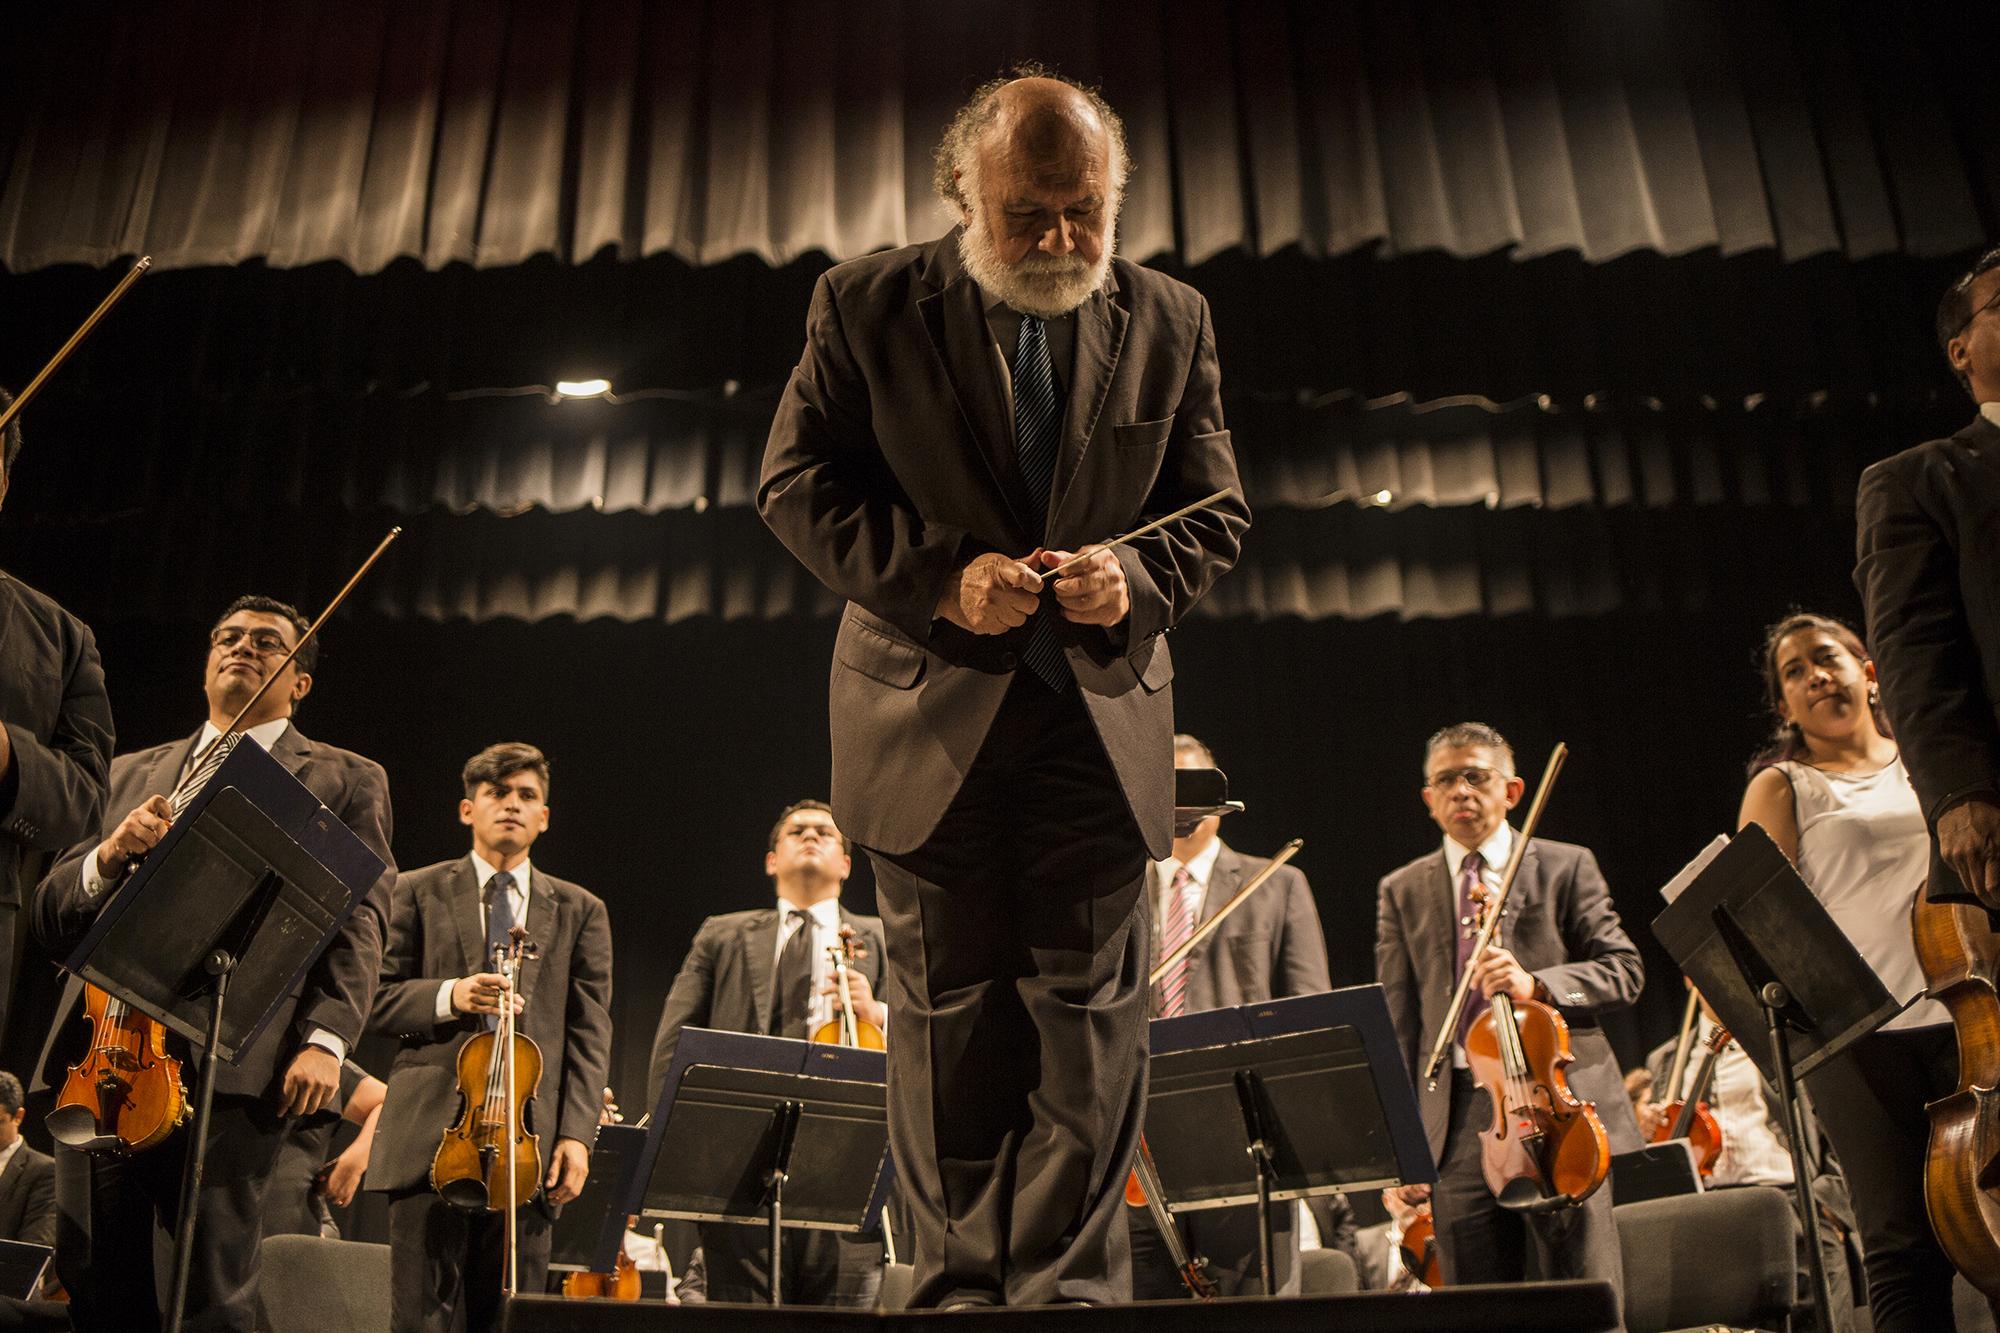 German Cáceres recibe la ovación del público después de uno de sus últimos conciertos como director titular de la Orquesta Sinfónica de El Salvador, en el Teatro Nacional, en el Centro Histórico de San Salvador. Foto de El Faro: Víctor Peña. 